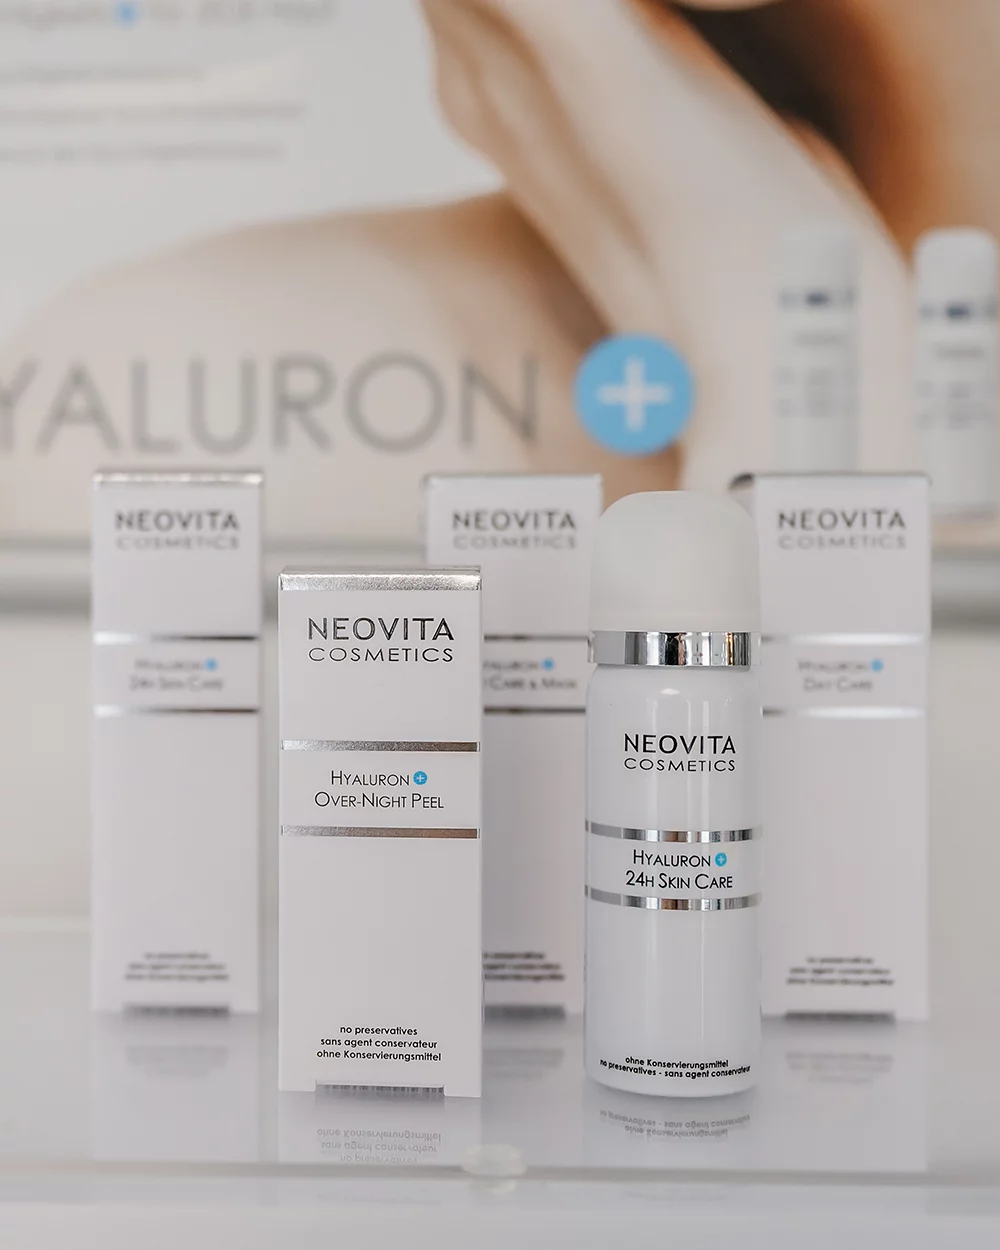 HautGenuss in Kreuzau nutzt Produkt von NEOVITA für die Anwendungen